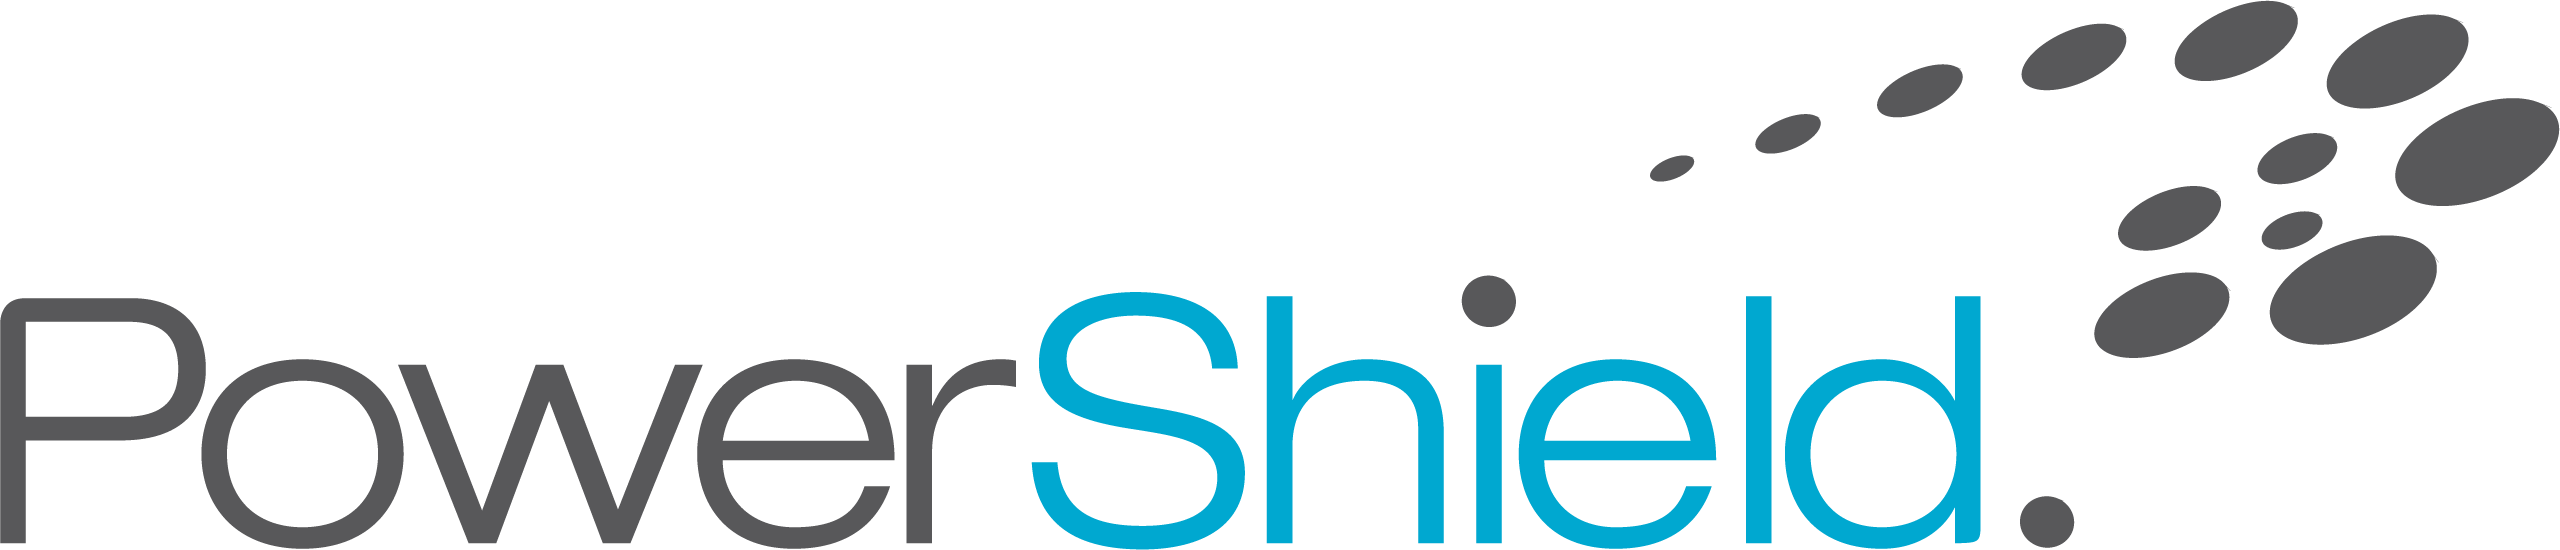 PowerShield logo-1